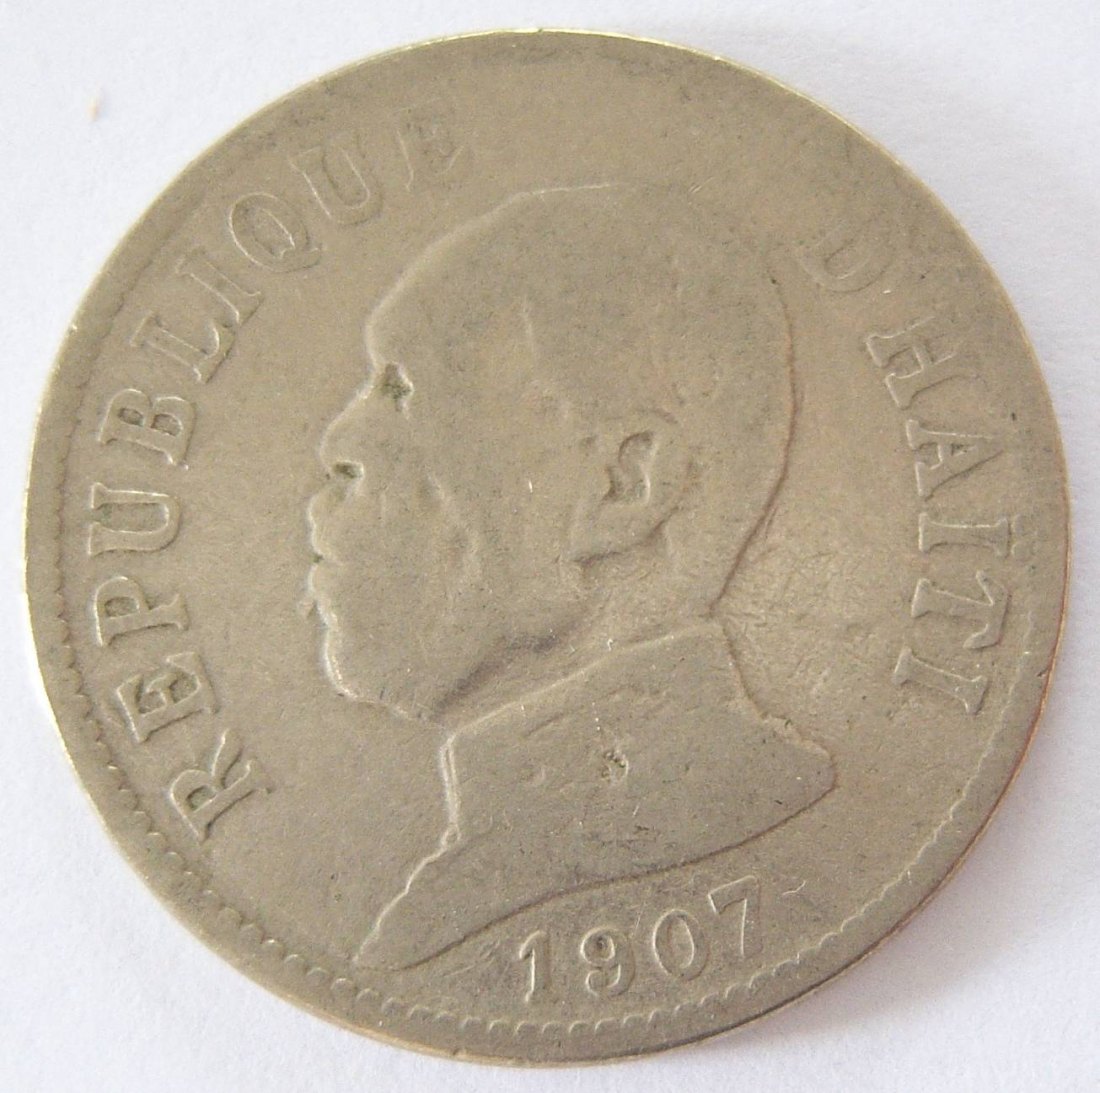  Haiti 20 Centimes 1907   